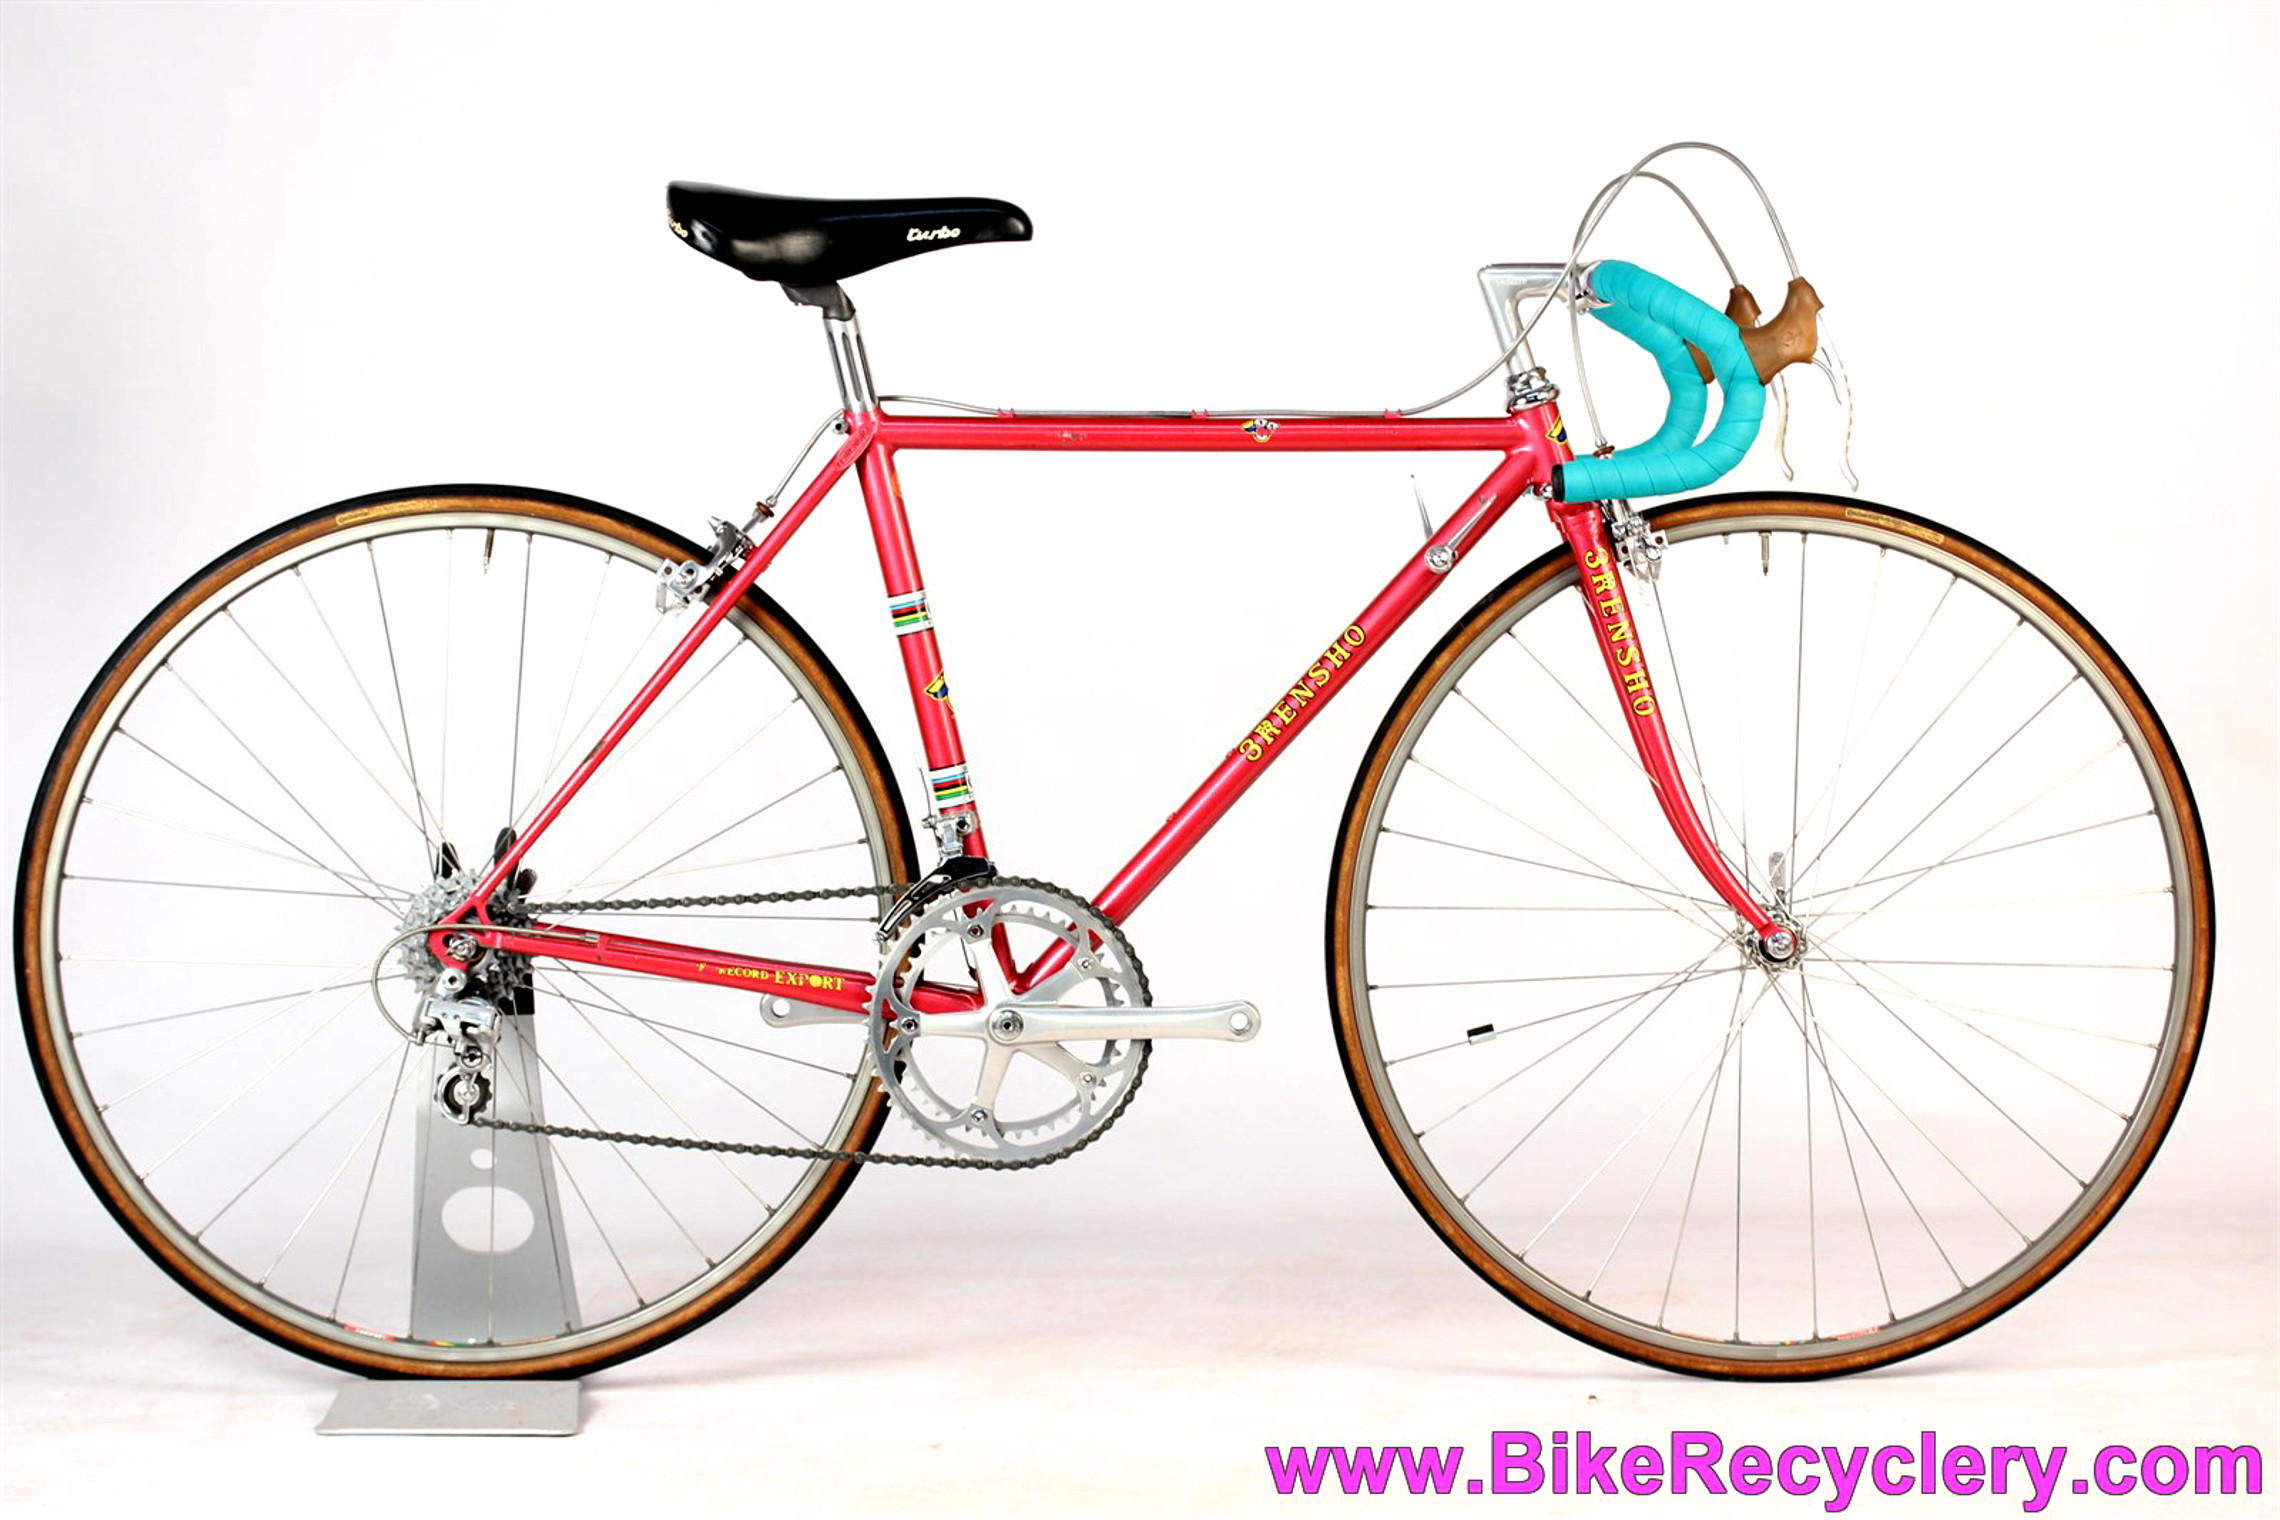 45cm bike